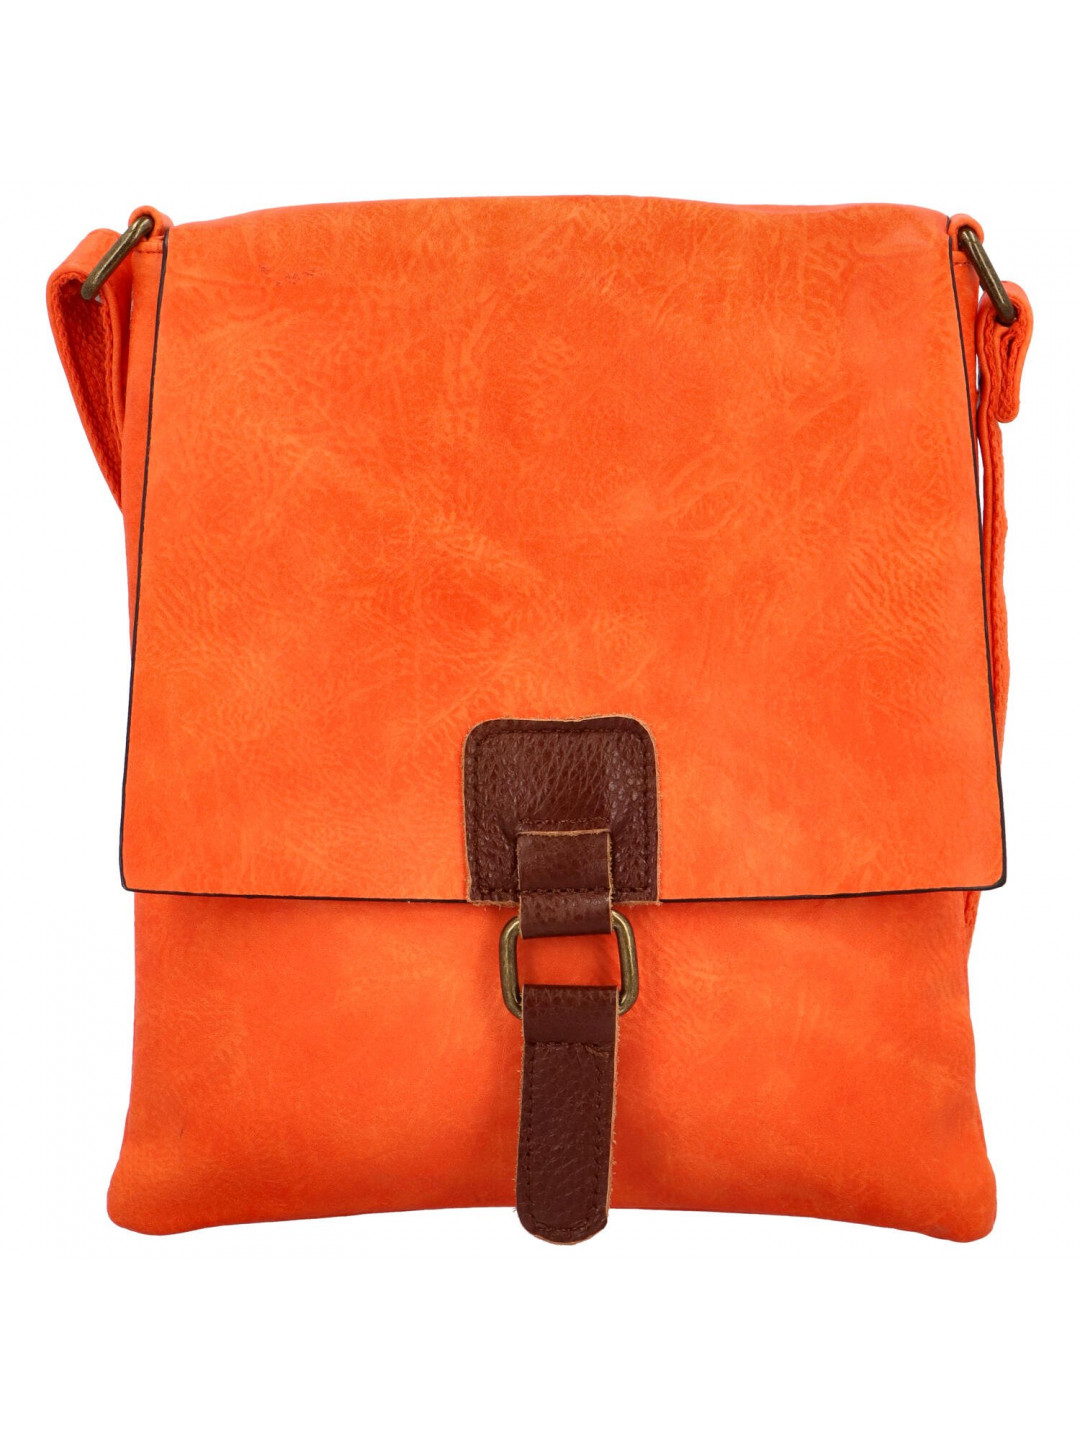 Dámská crossbody kabelka oranžová – Paolo bags Siwon